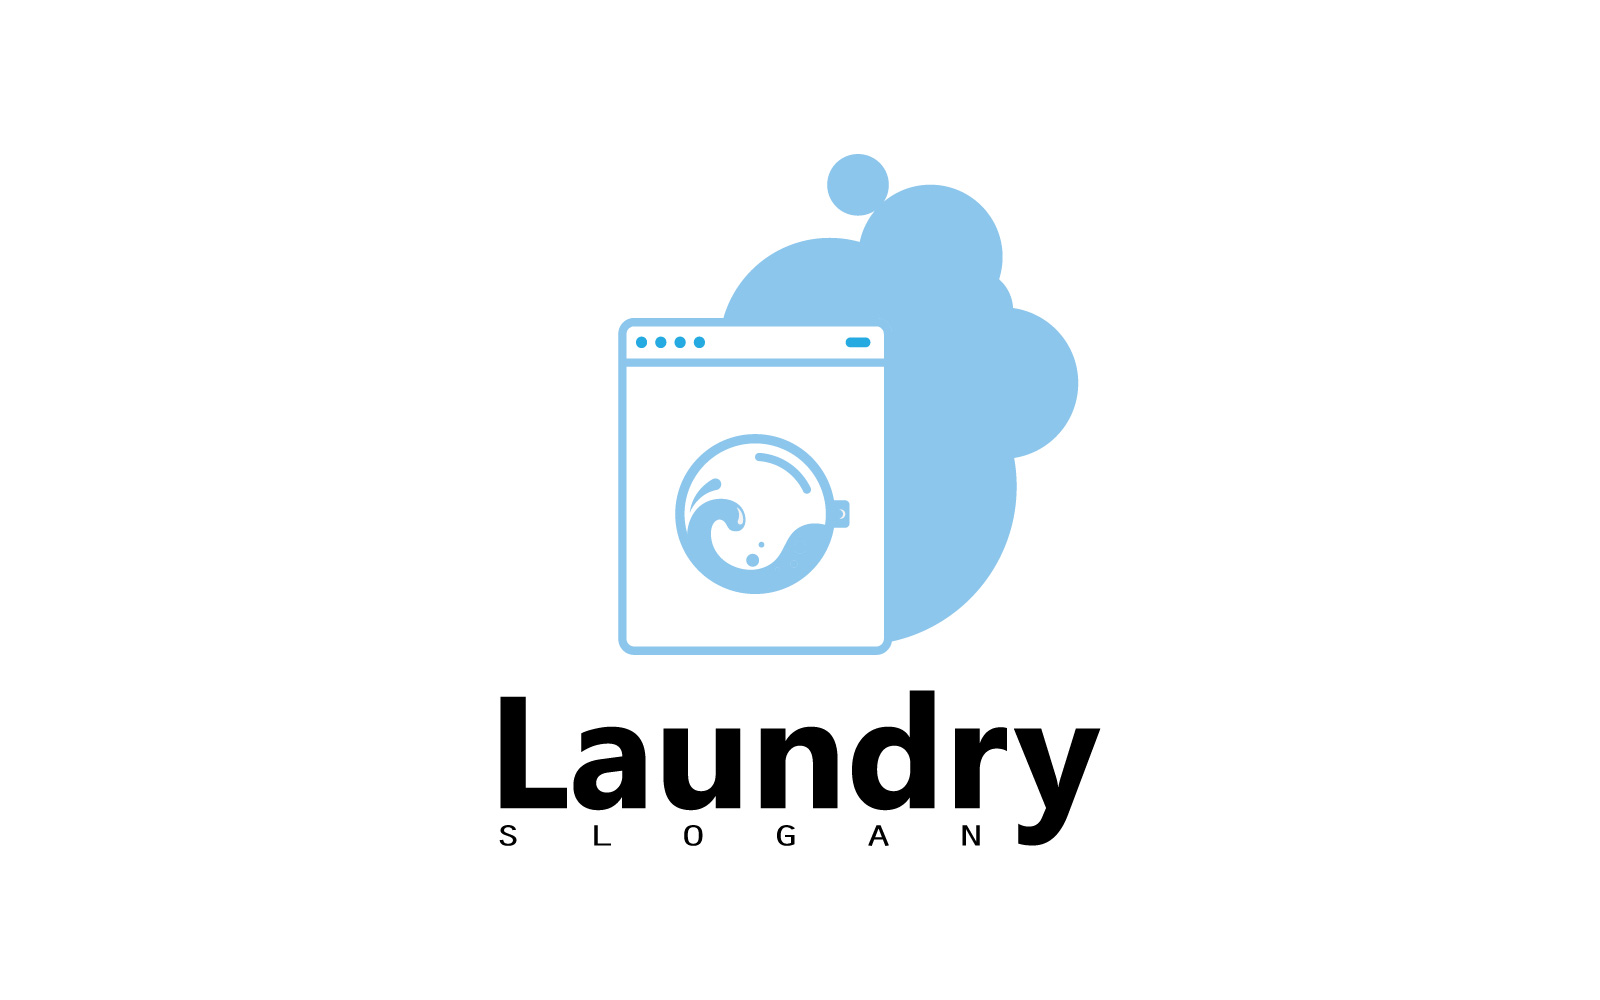 Washing machine laundry icon logo design V2